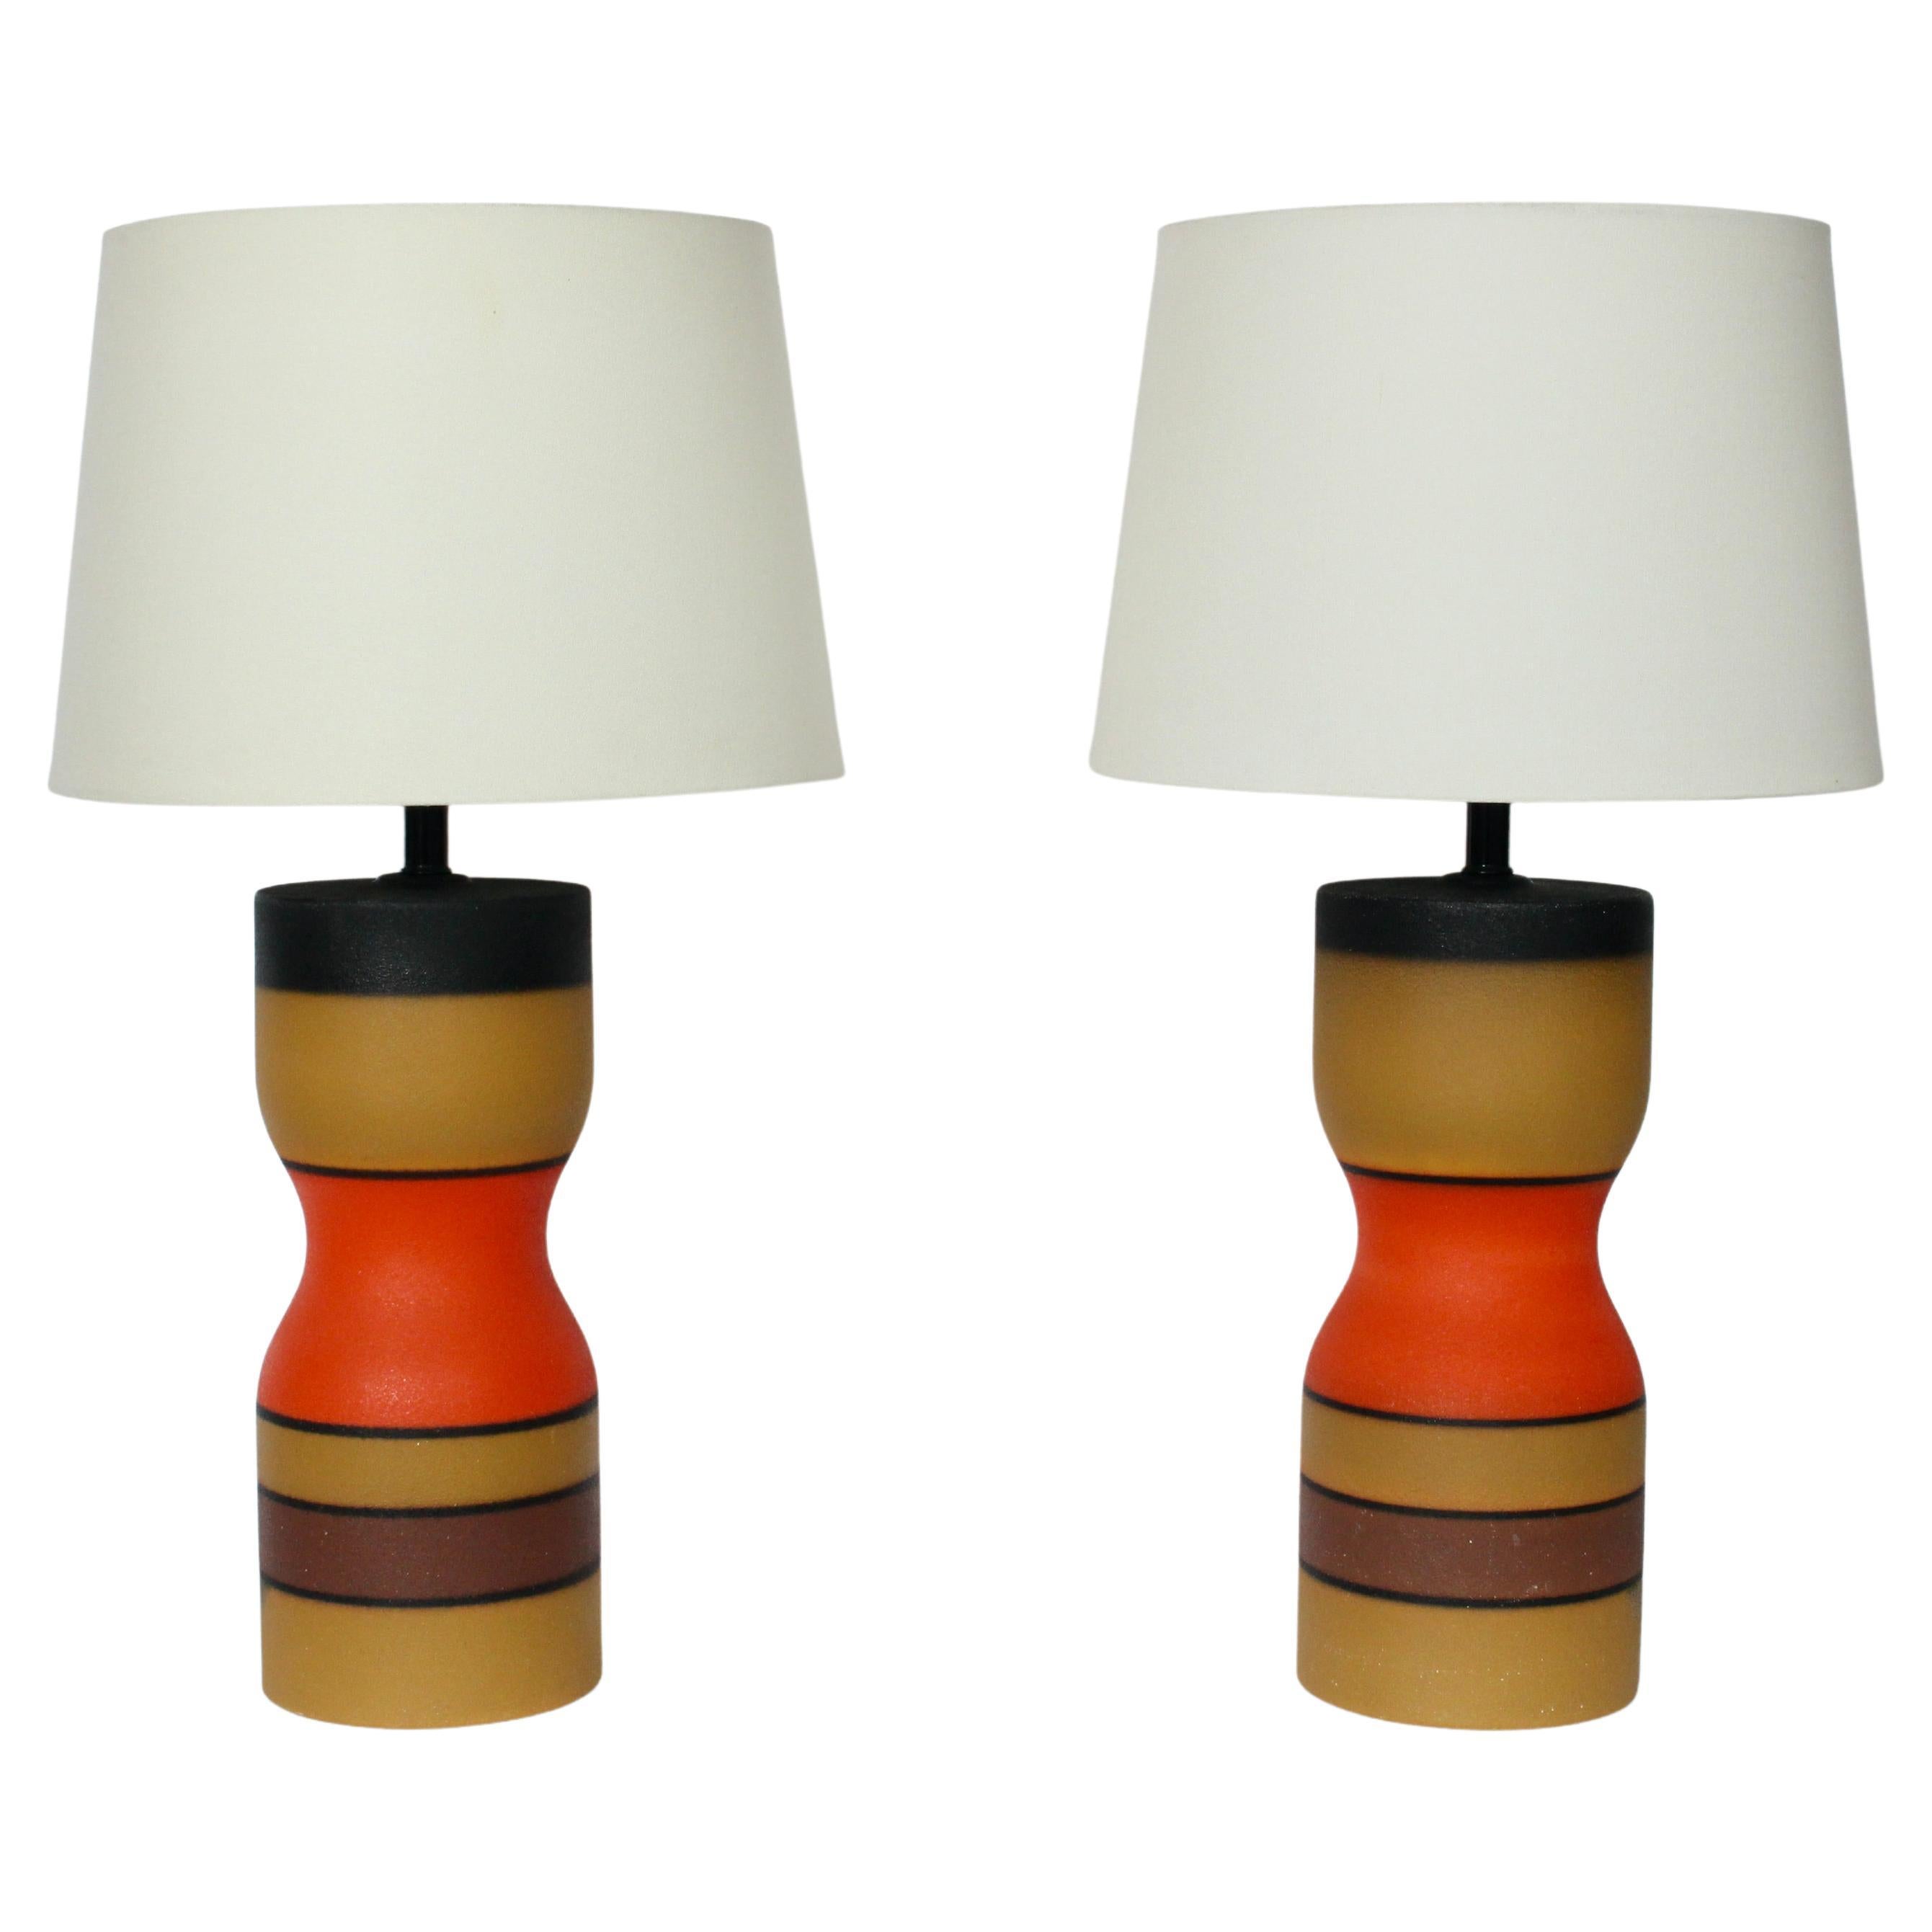 Paire de lampes de table en poterie de style Bruno Gambone à bandes brillantes et modernes en forme de sablier